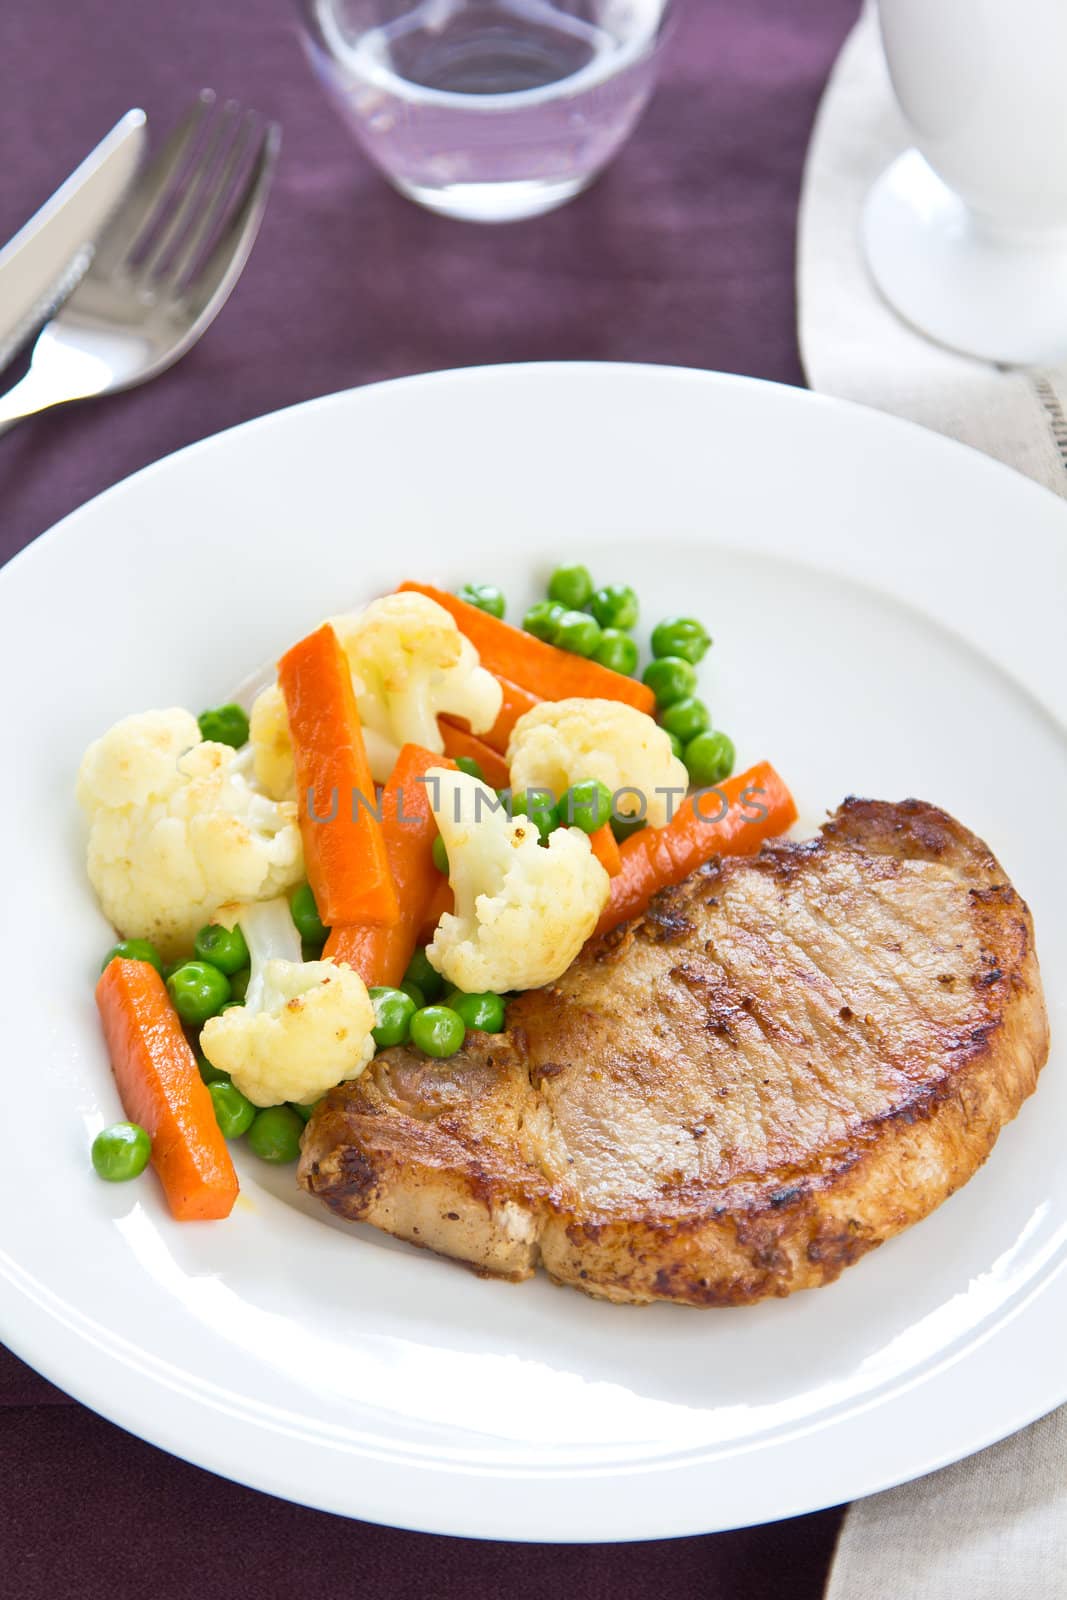 Pork steak with sautéed vegetable by vanillaechoes